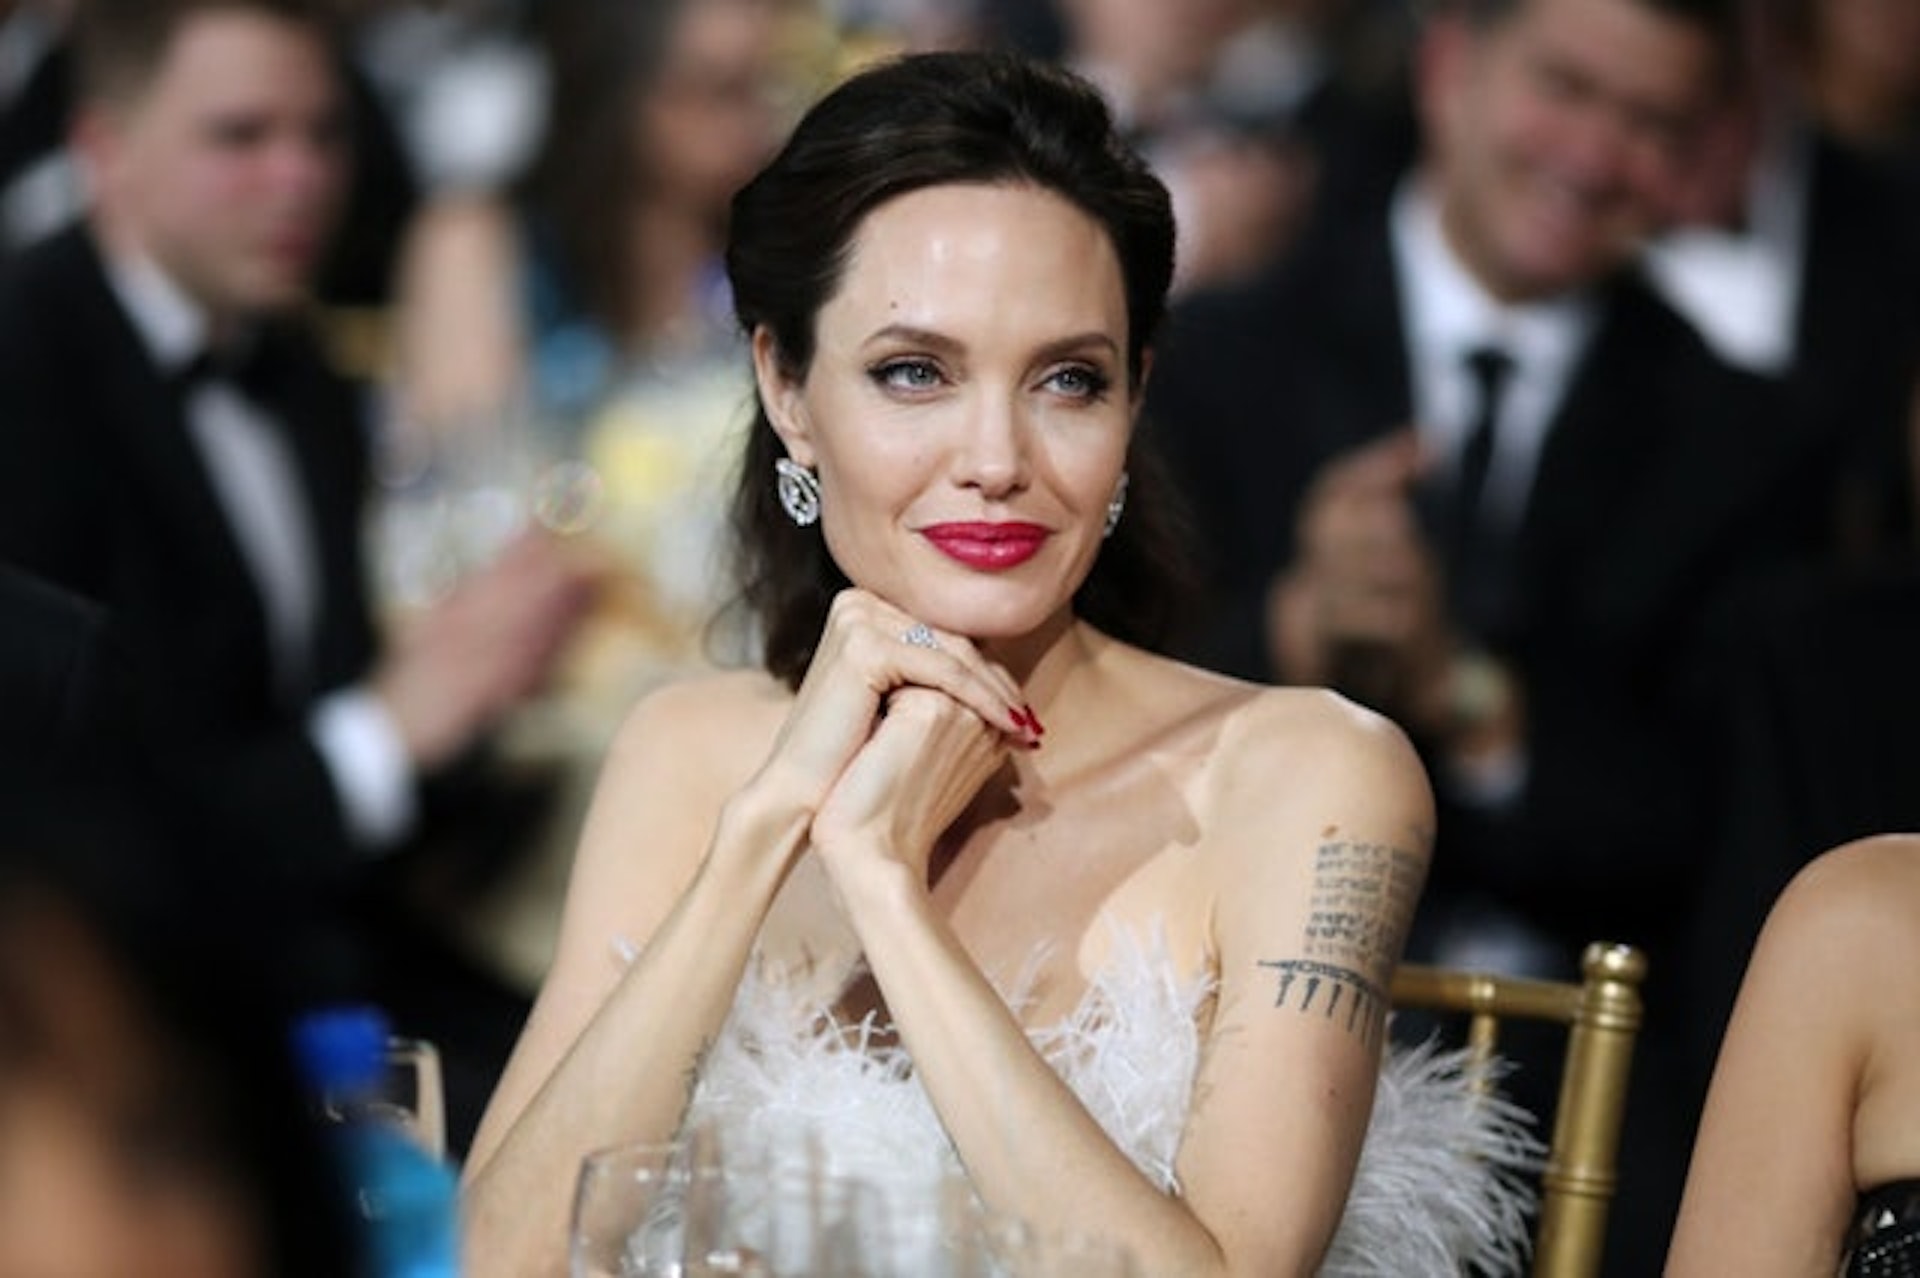 安祖蓮娜祖莉（Angelina Jolie）領養了三位孩子，並視如己出。(Getty Image)